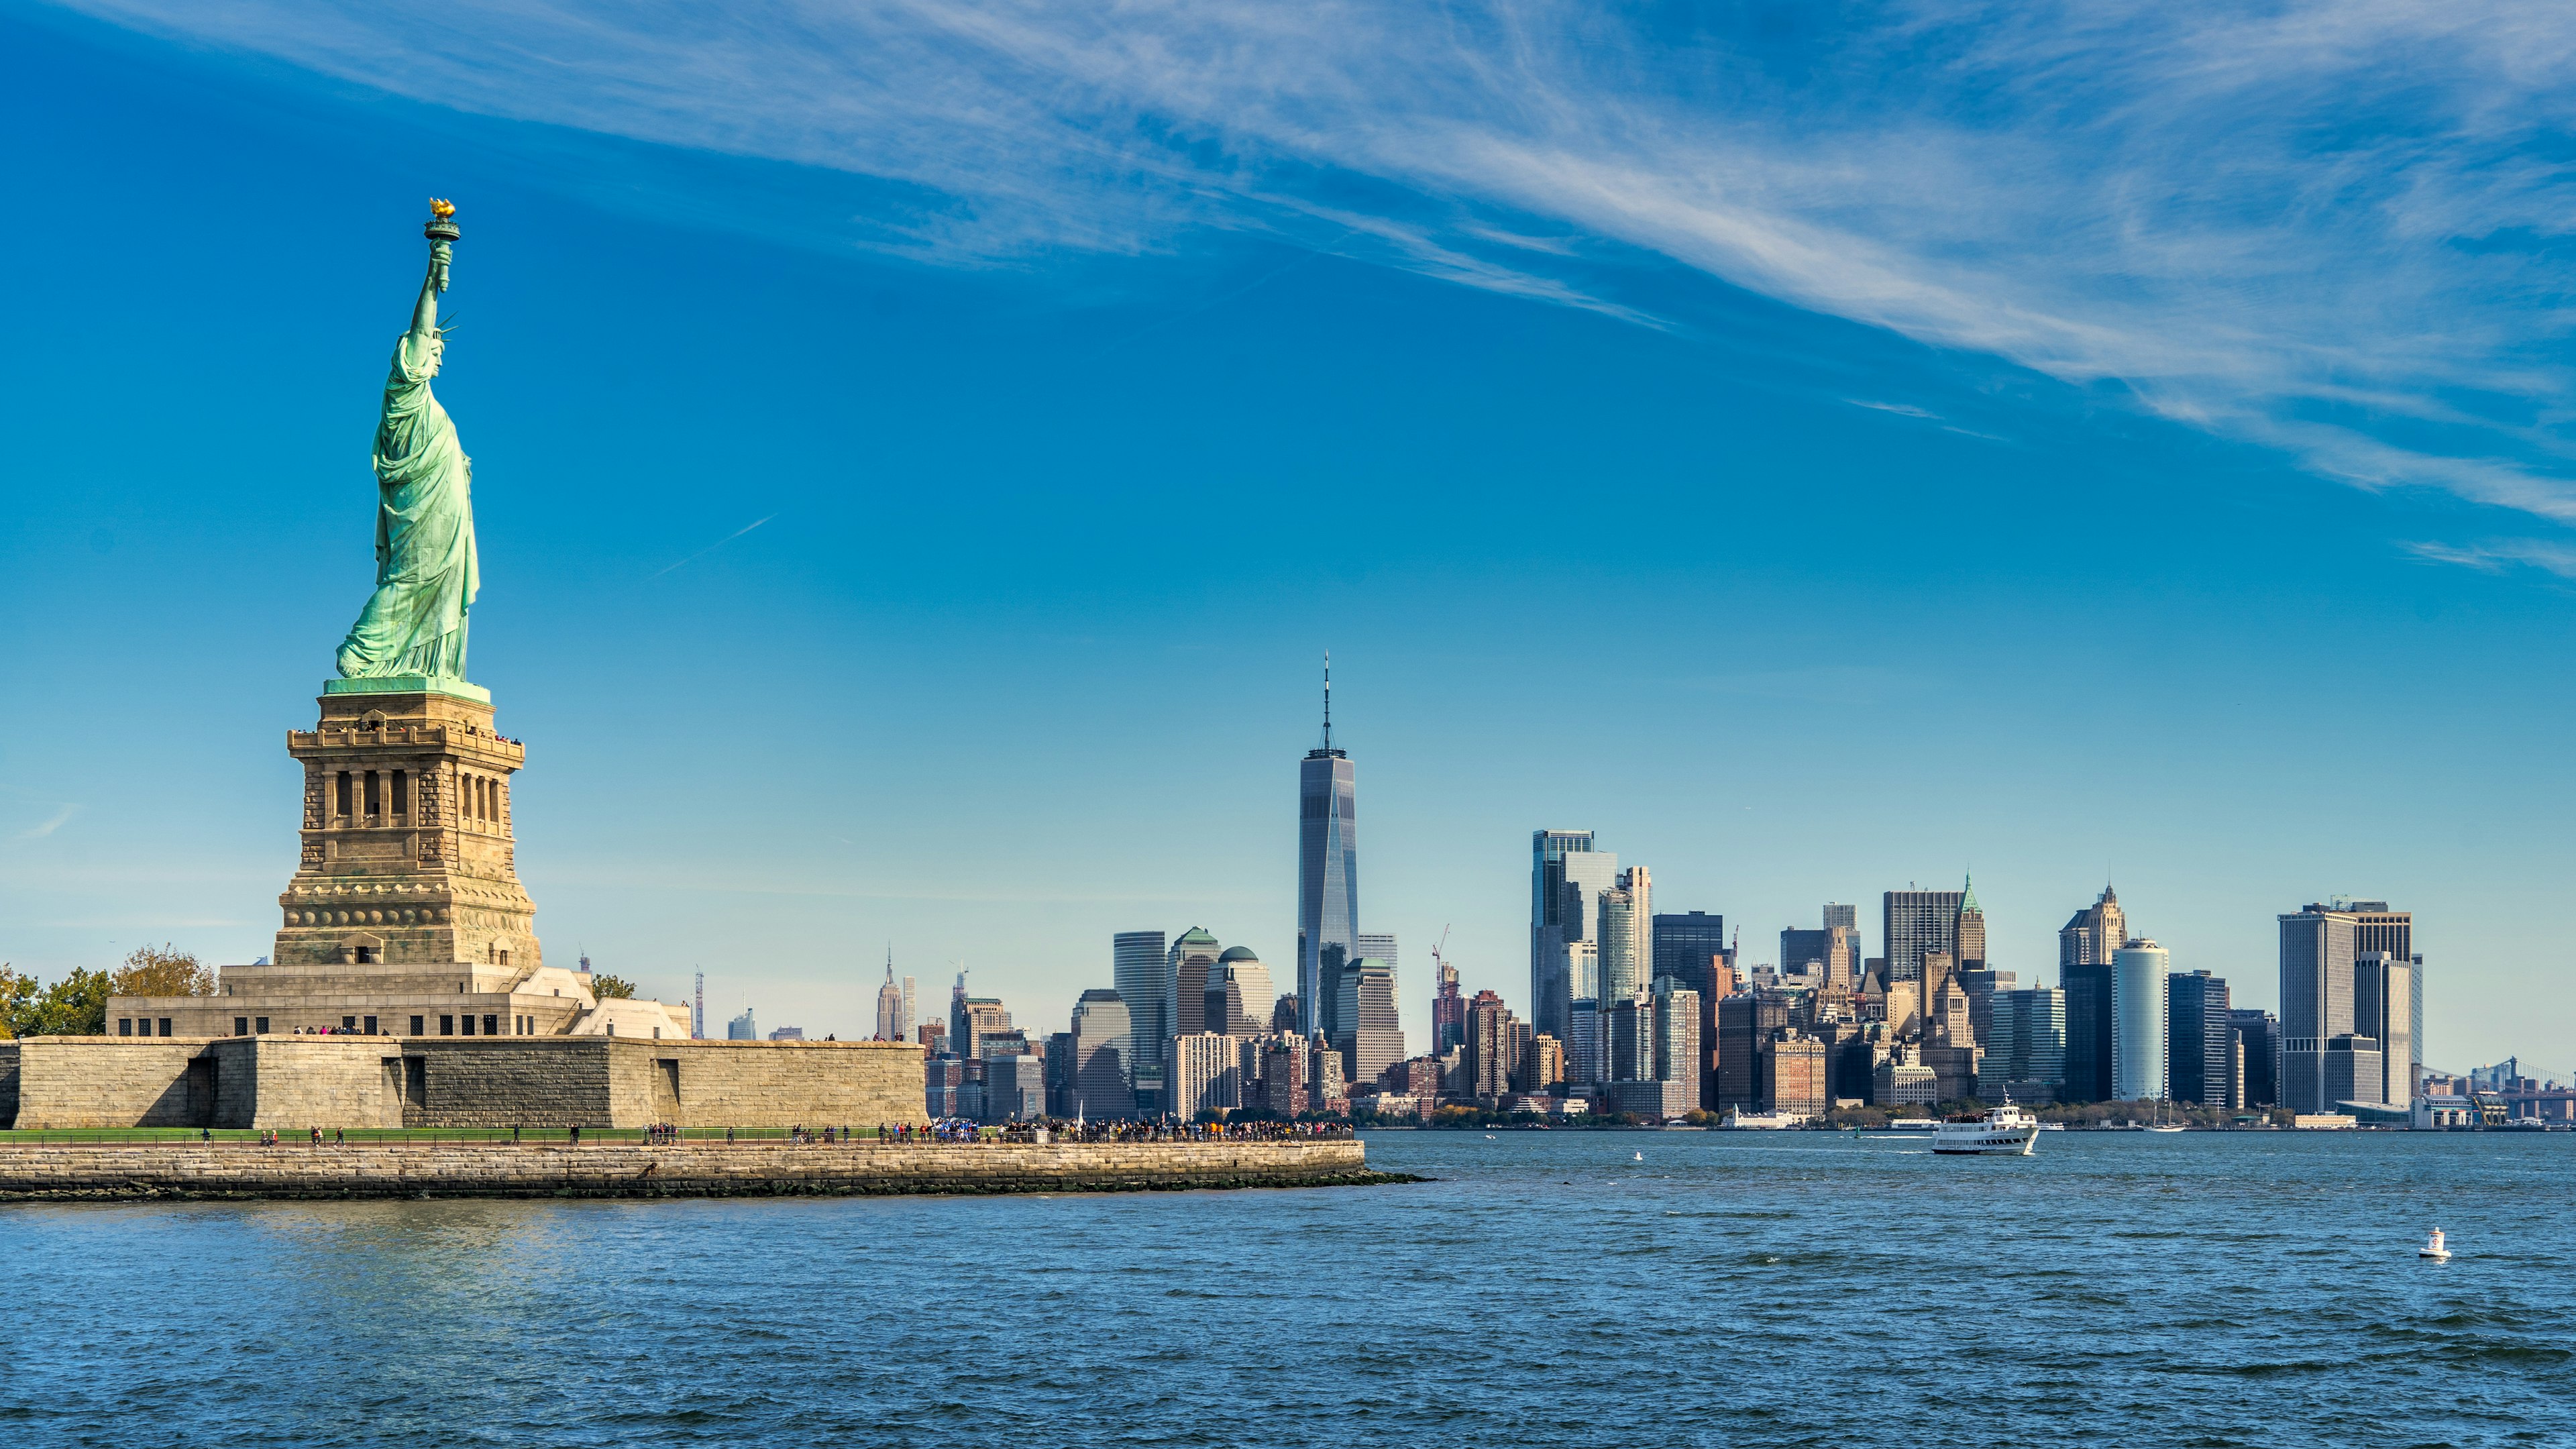 la statua della libertà e ellis island viste dal traghetto, un'esperienza da non perdere a new york